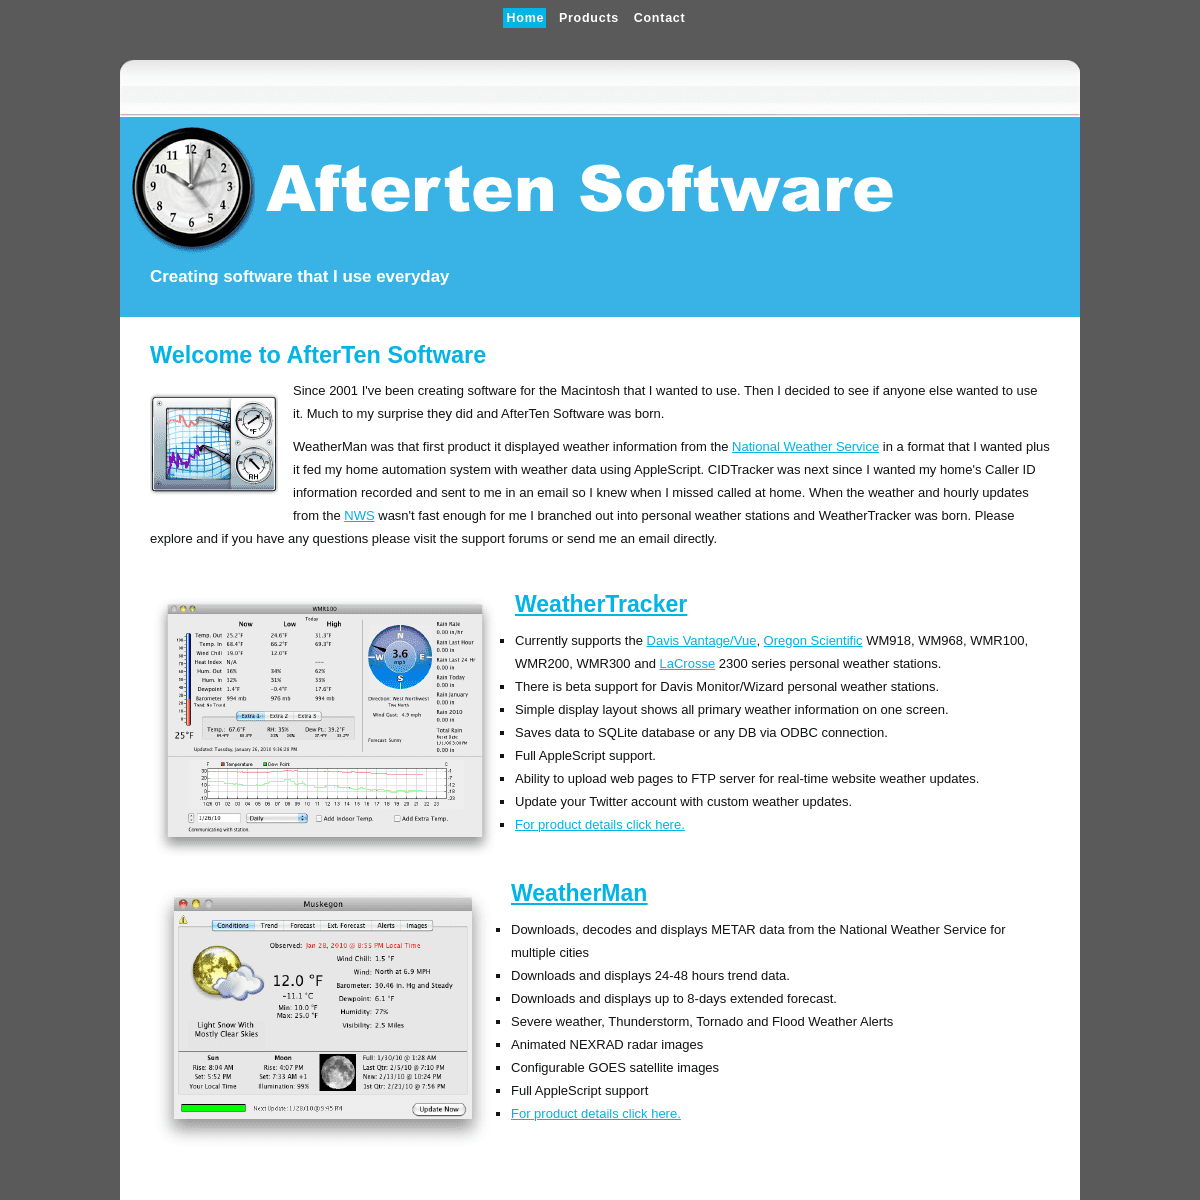 A complete backup of afterten.com